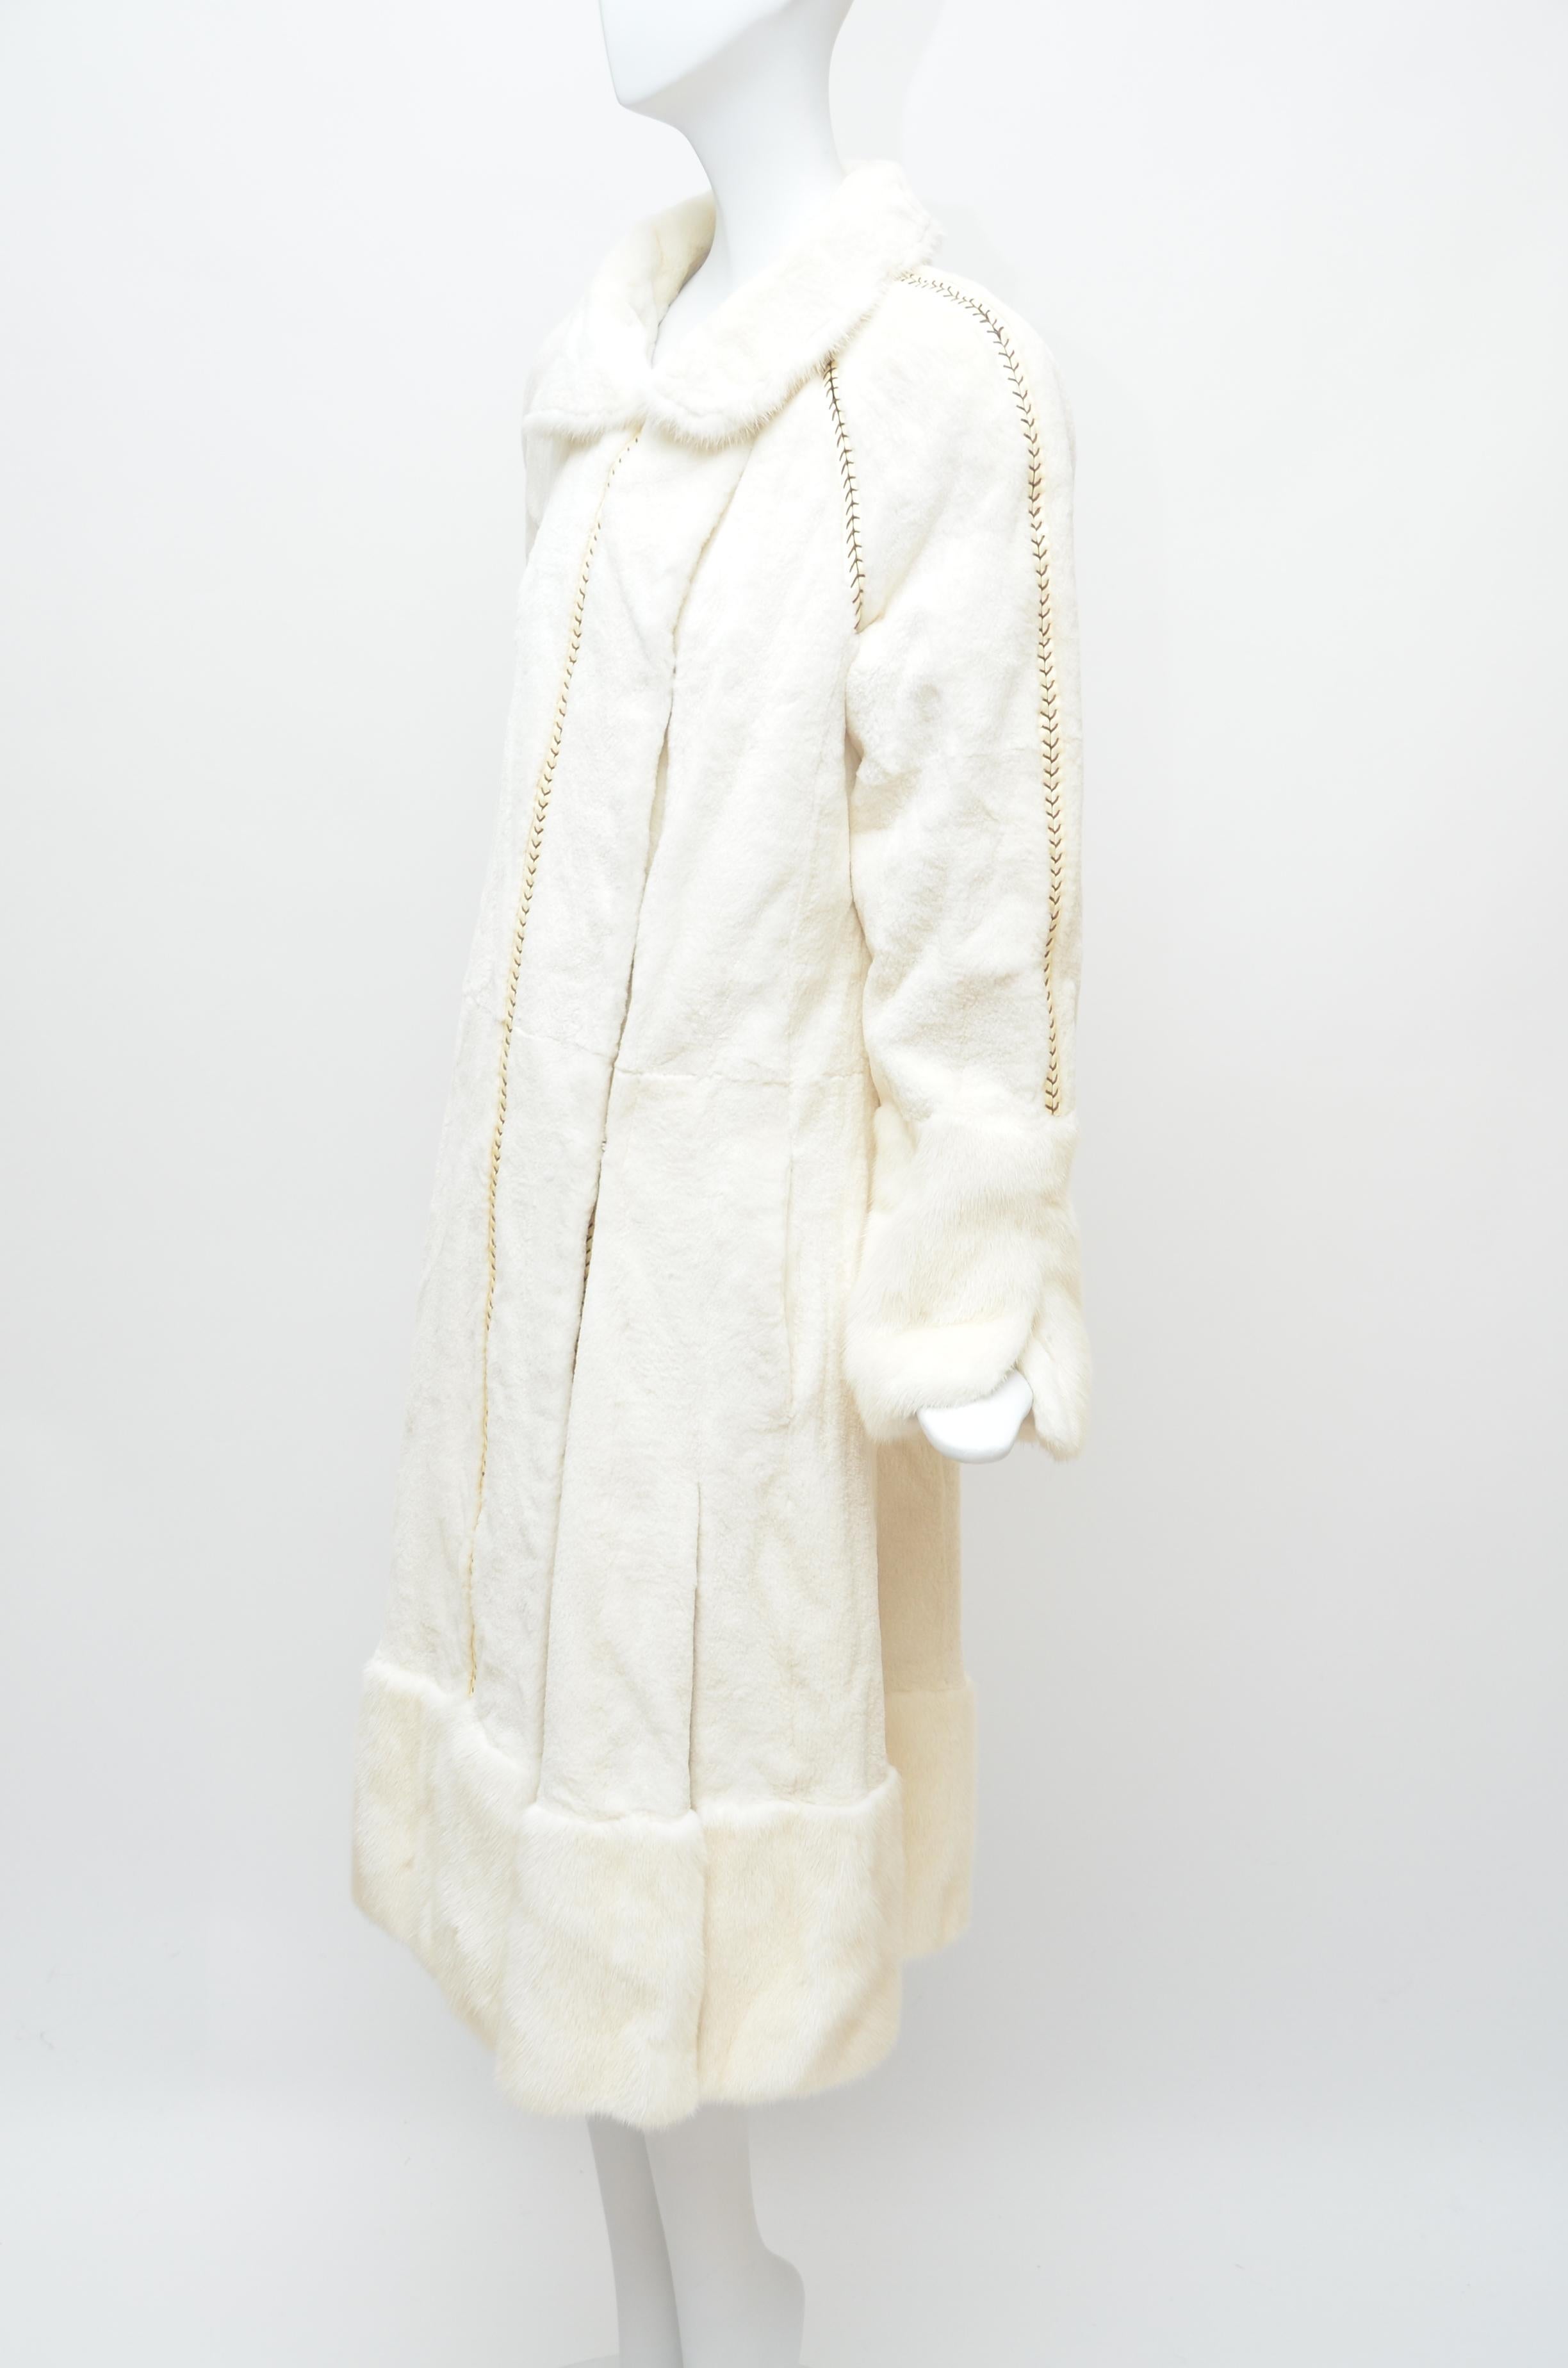 fendi white coat